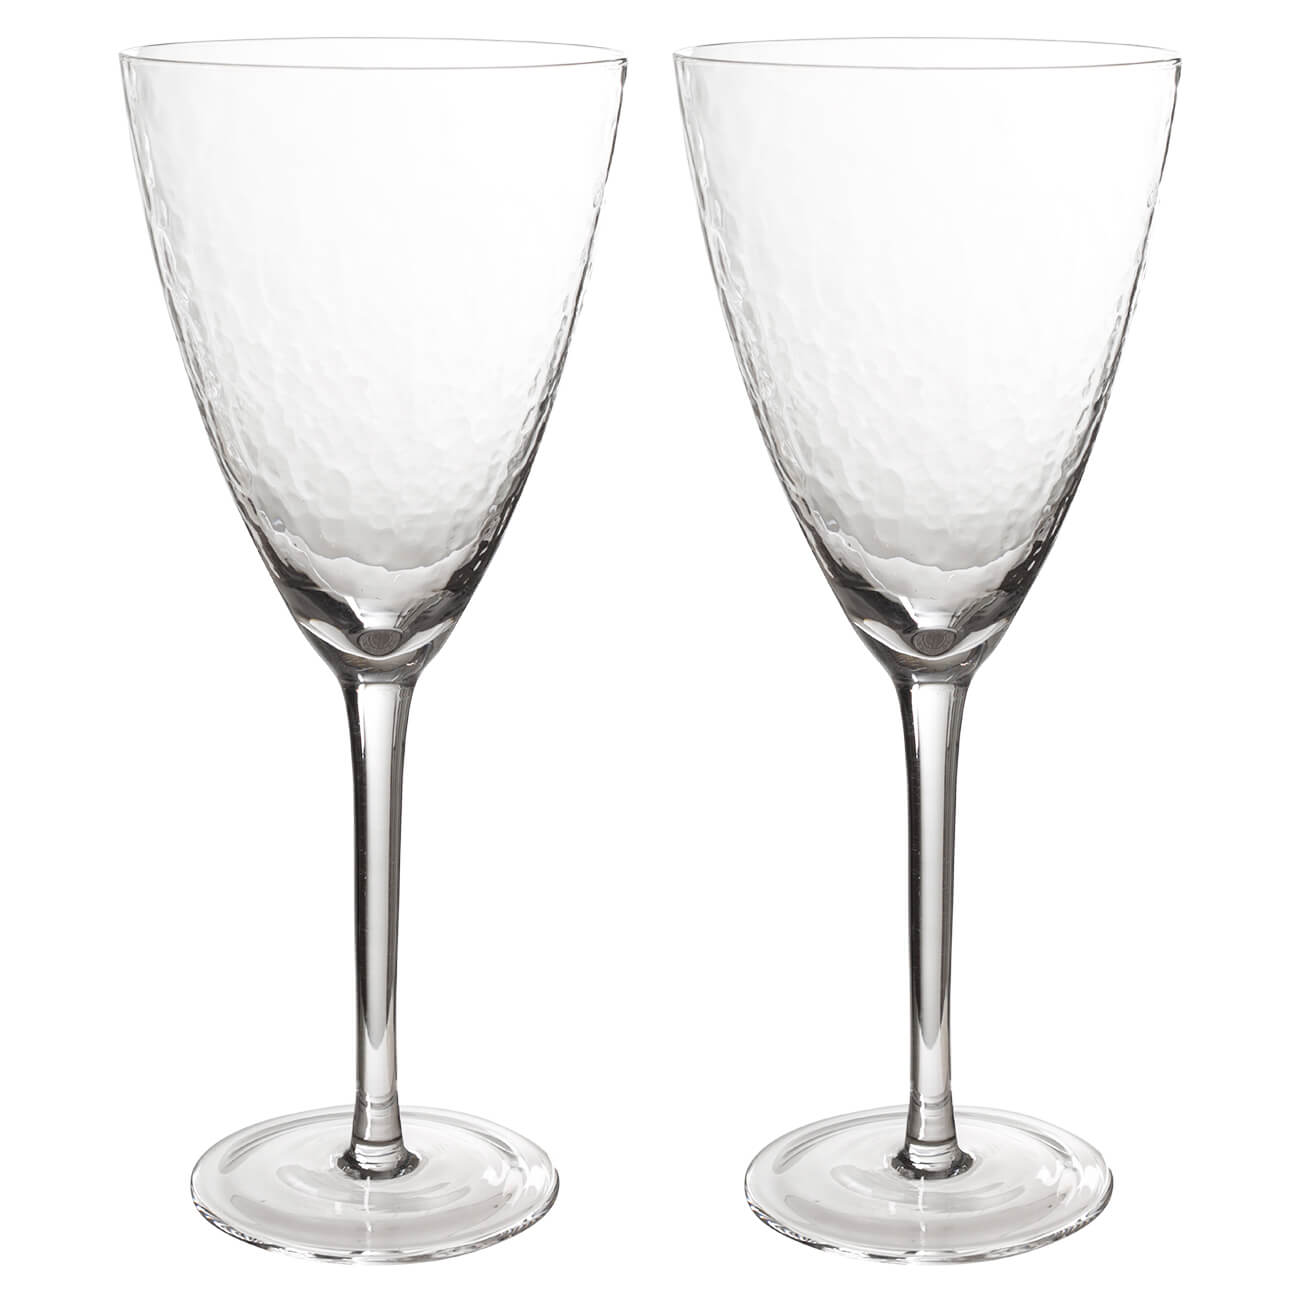 Бокал для вина, 400 мл, 2 шт, стекло, Ripply бокал для шампанского 275 мл 2 шт стекло перламутр ripply polar